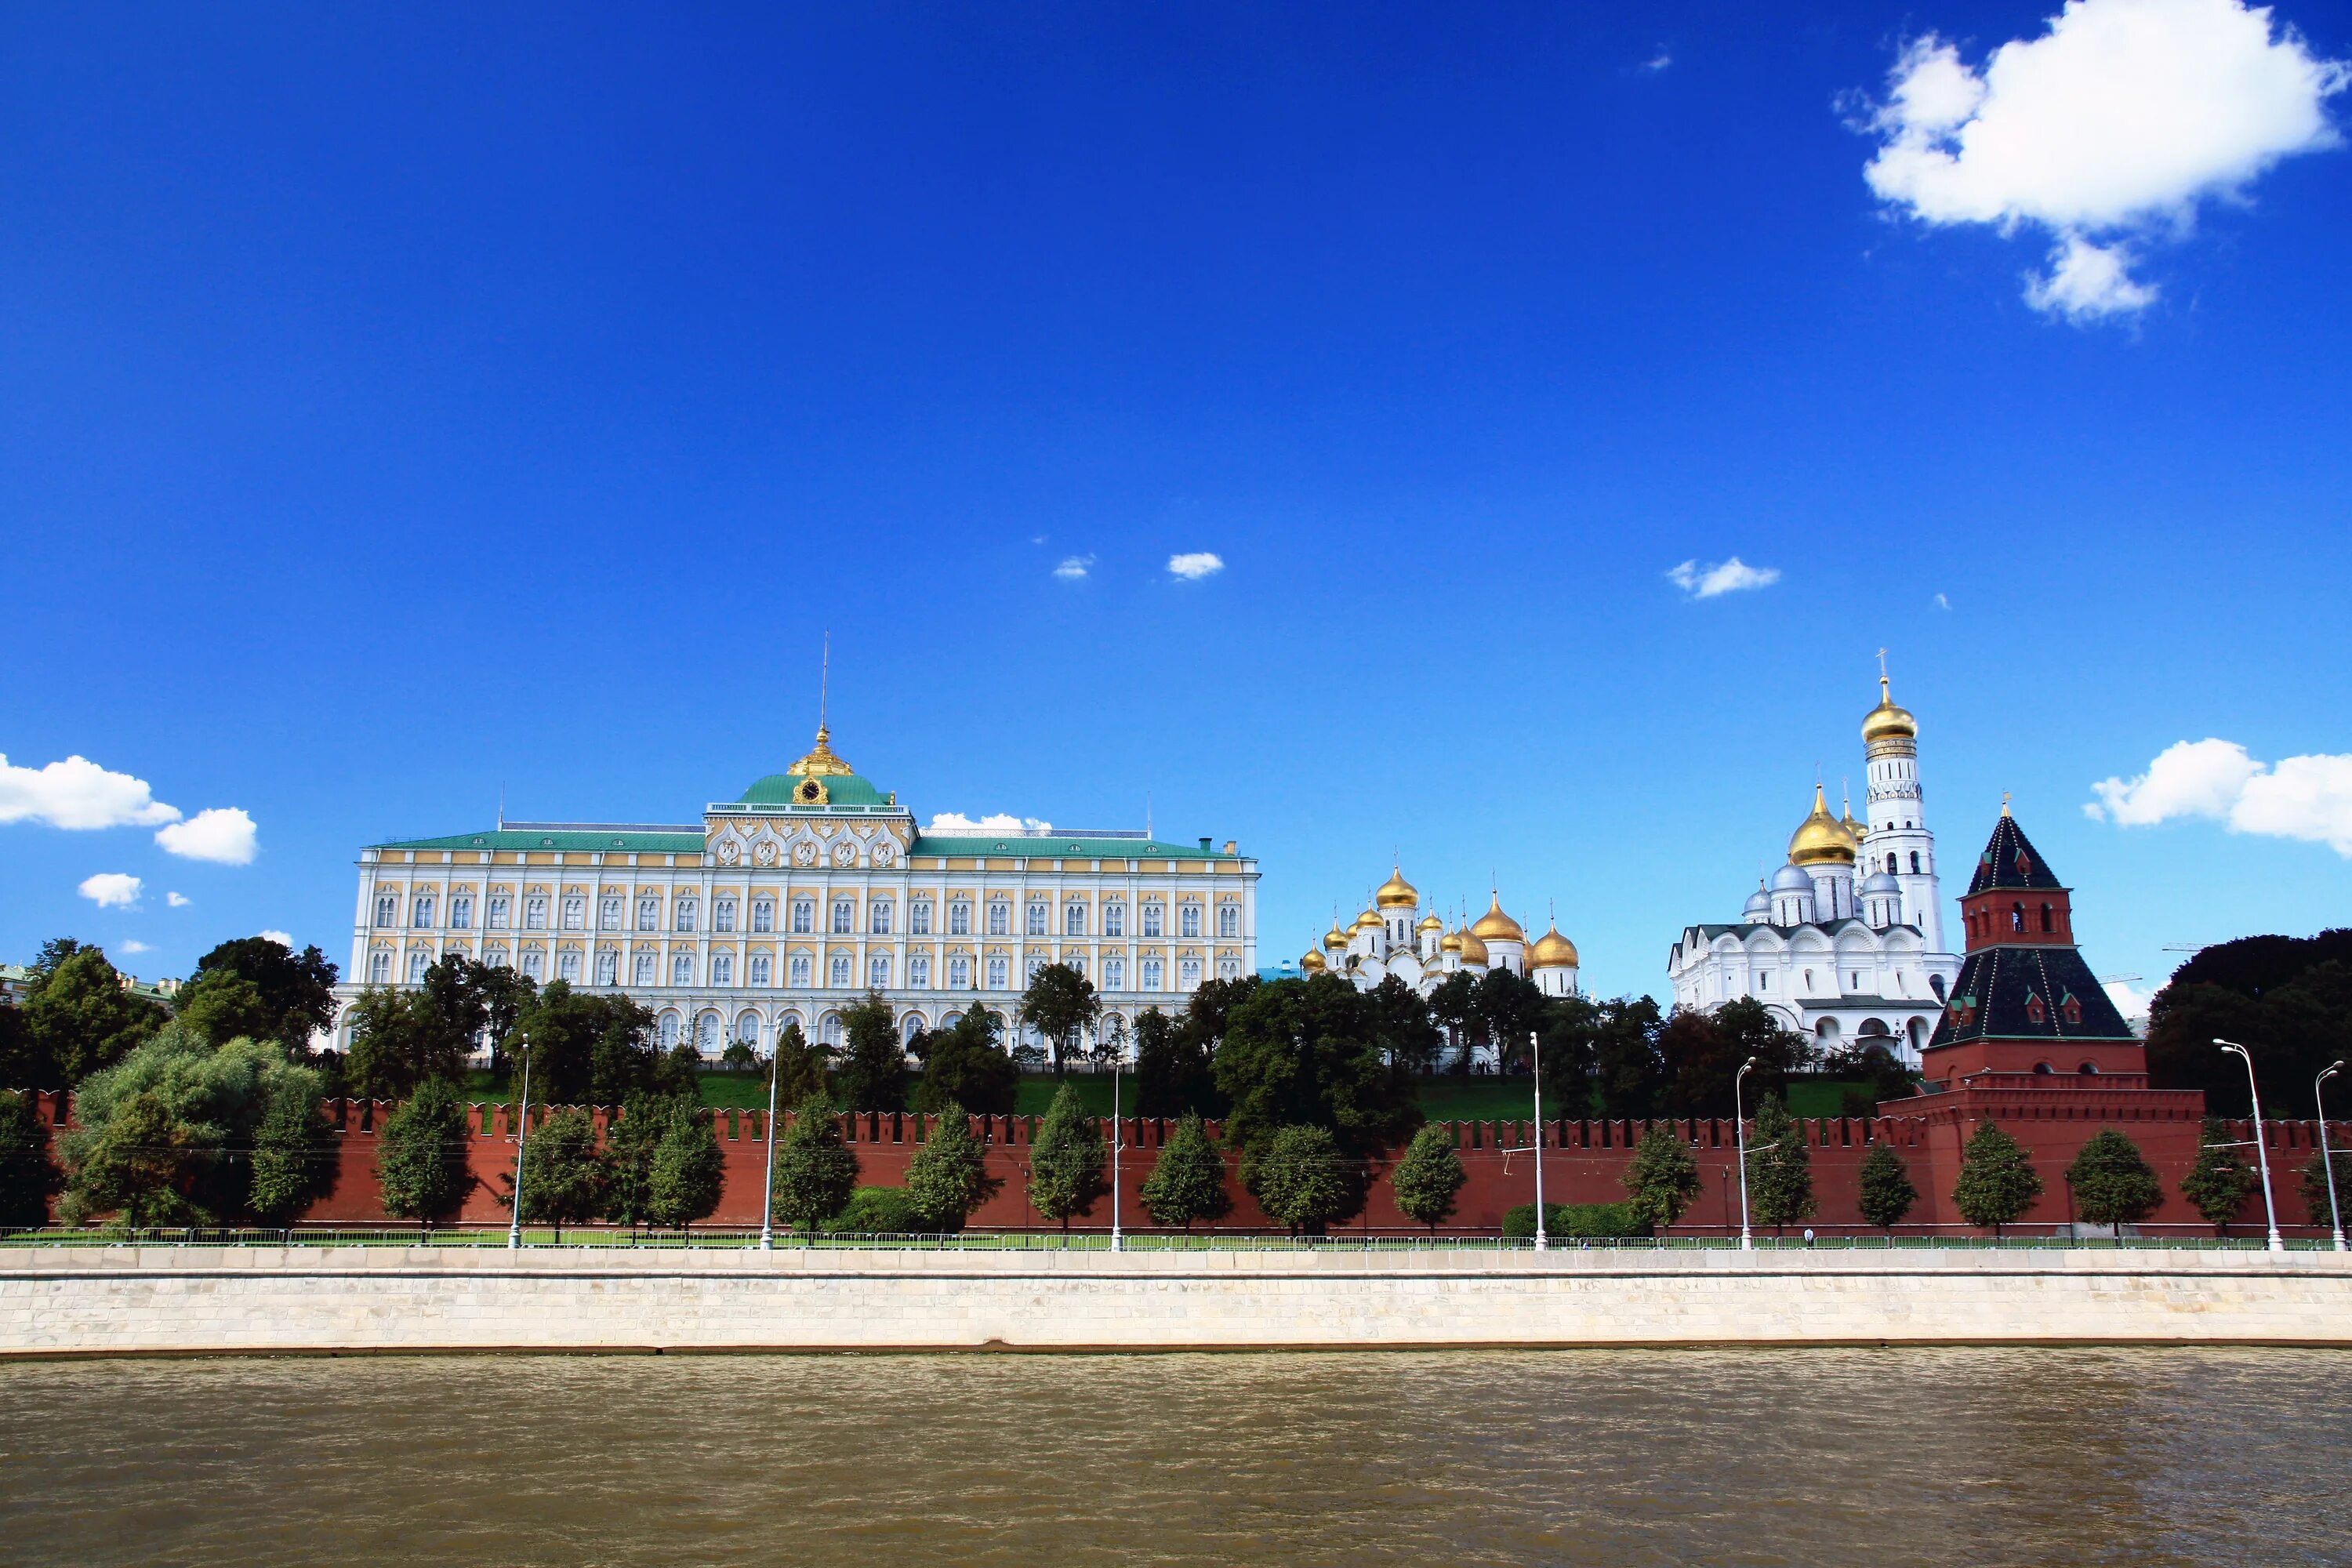 Как выглядит большой кремлевский дворец. Кремлевский дворец Московского Кремля. Кремль большой Кремлевский дворец. Большой Кремлёвский дворец (резиденция президента РФ). Московский Кремль большой Кремлевский дворецдворец.